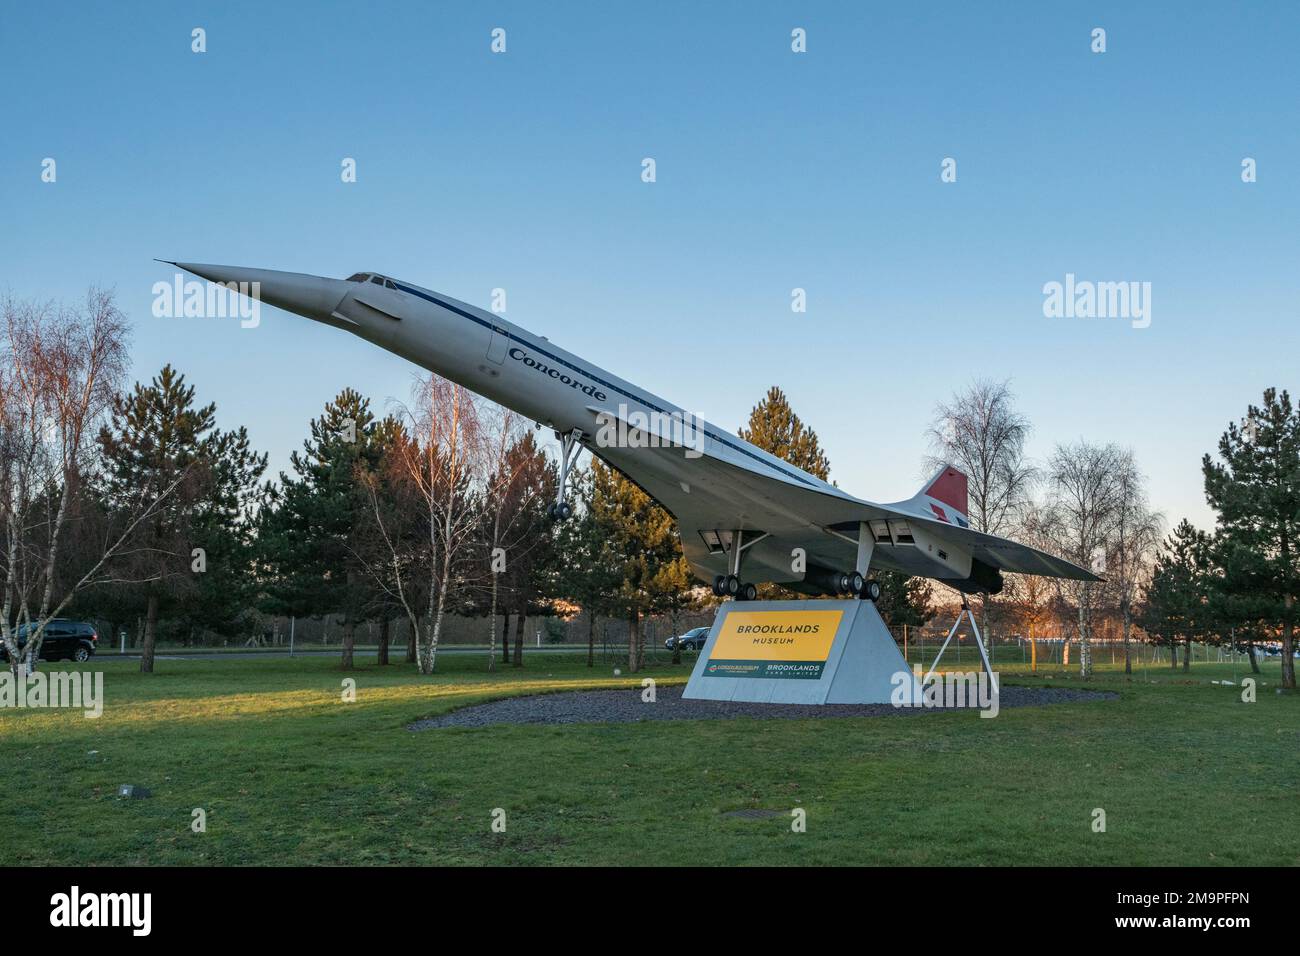 Modèle de bac aérospatiale Concorde à l'entrée du site, y compris Brooklands Muxseum, le London bus Museum et Mercedes-Benz Brooklands. Banque D'Images